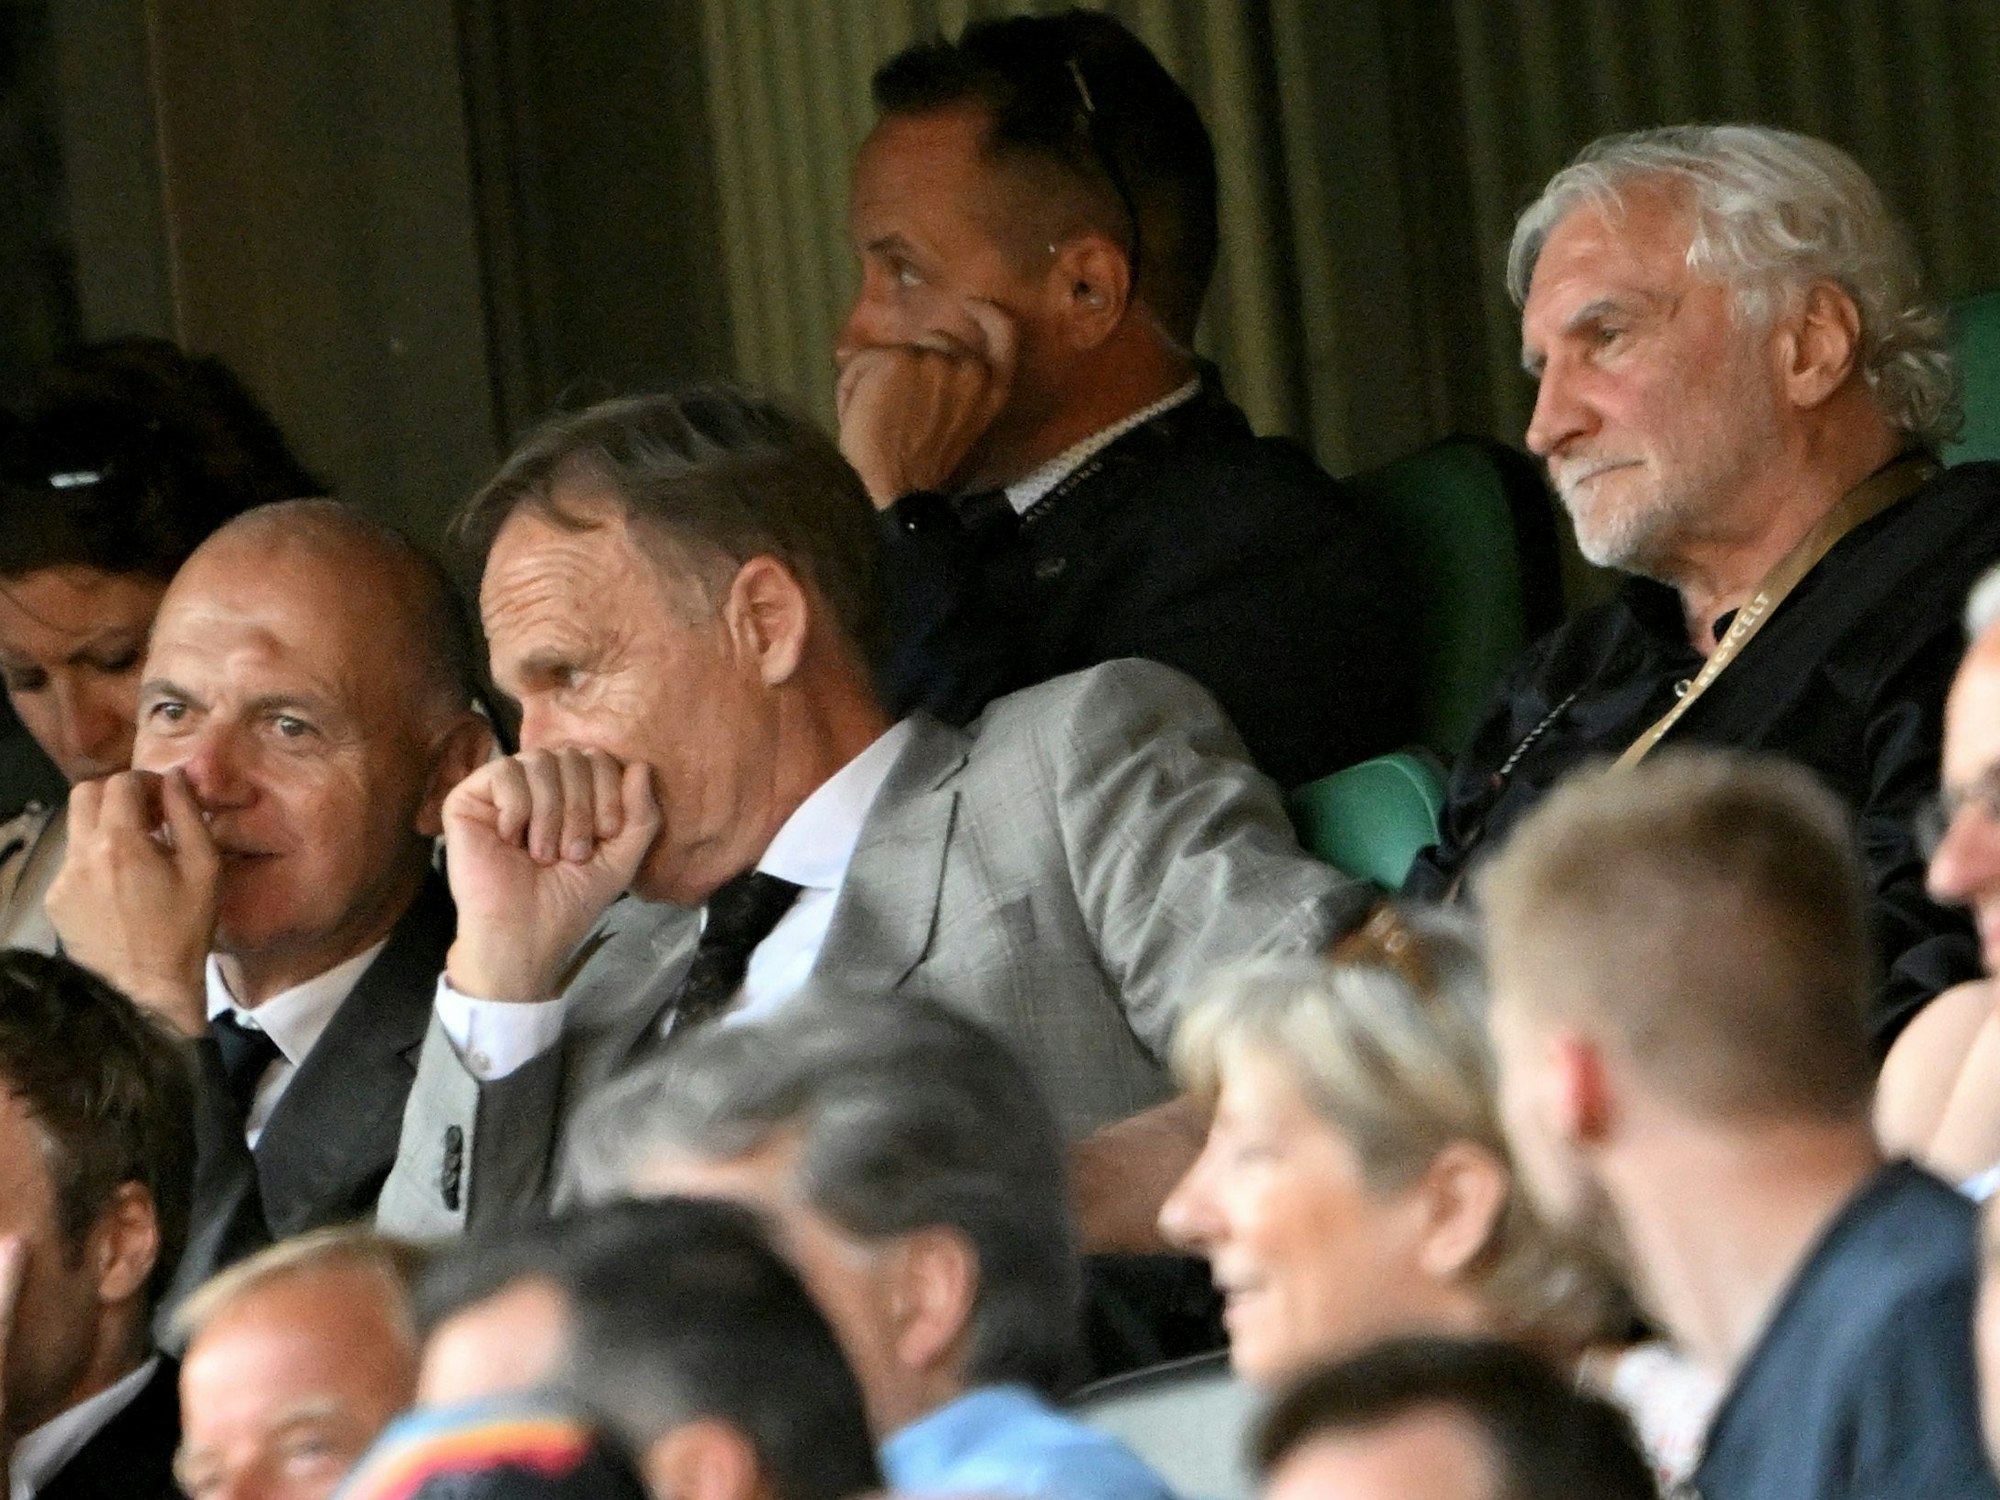 DFB-Präsident Bernd Neuendorf (l-r), DFL-Aufsichtsratschef Hans-Joachim Watzke sitzen neben Rudi Völler.